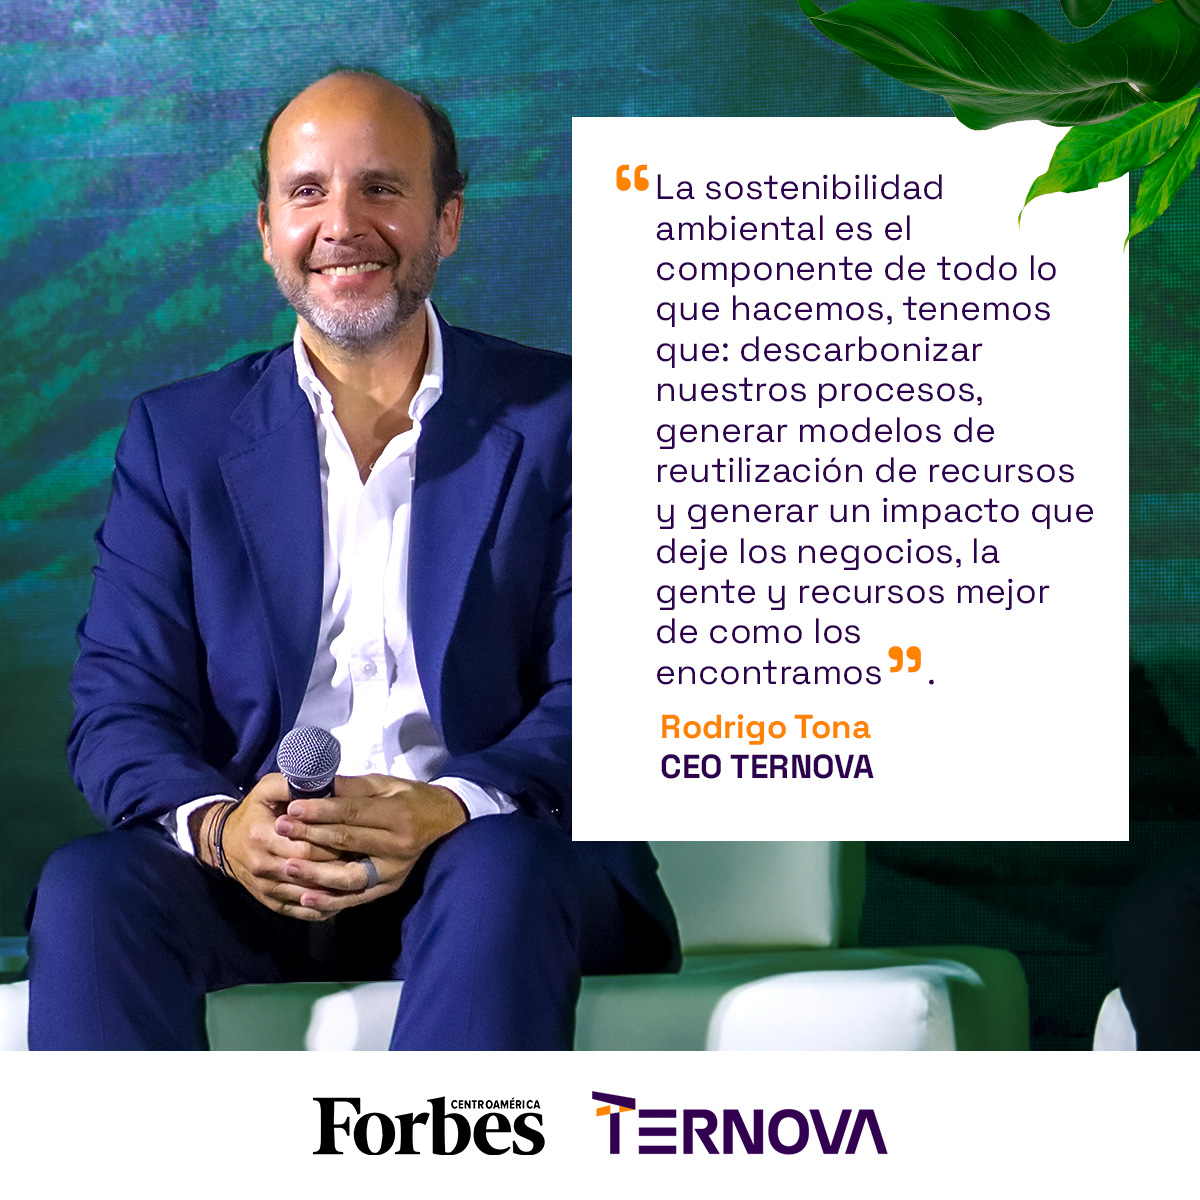 En Grupo Ternova, lideramos los negocios sostenibles desde nuestra estrategia empresarial para impulsar la transformación del mañana. #Ternova #sostenibilidad #ForbesSostenible #EconomíaVerde